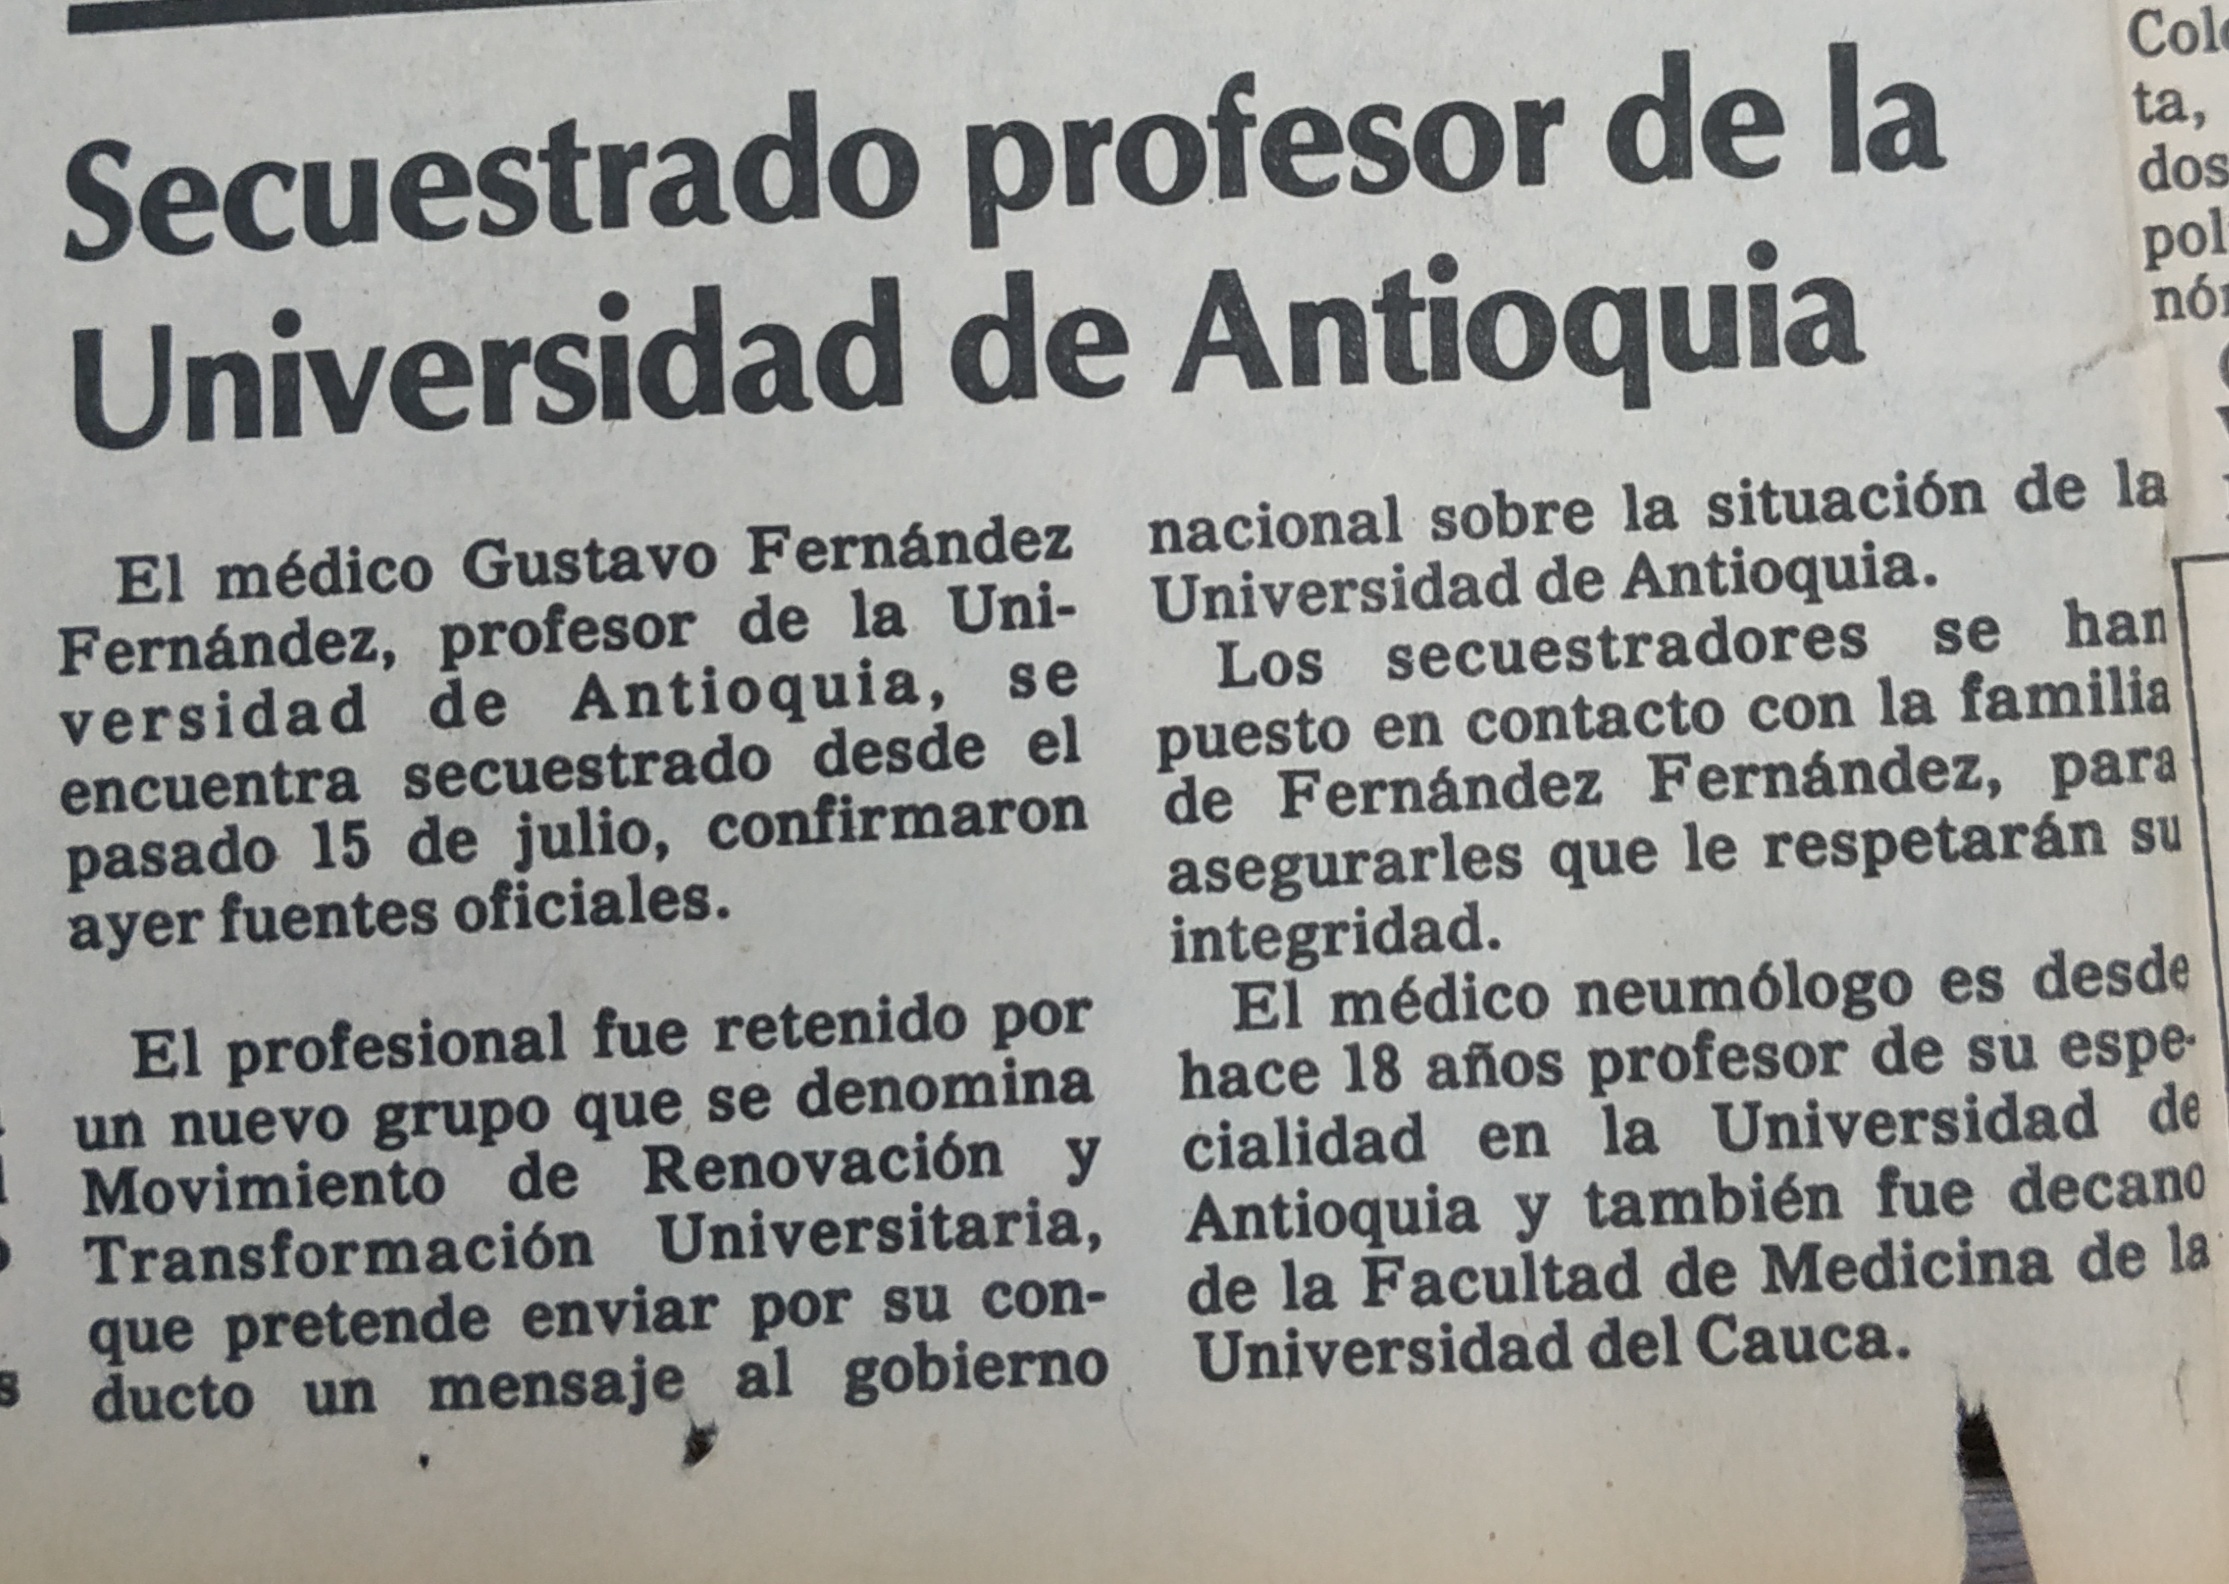 Fotografía tomada de la edición del 22 de julio de 1988 del periódico El Colombiano